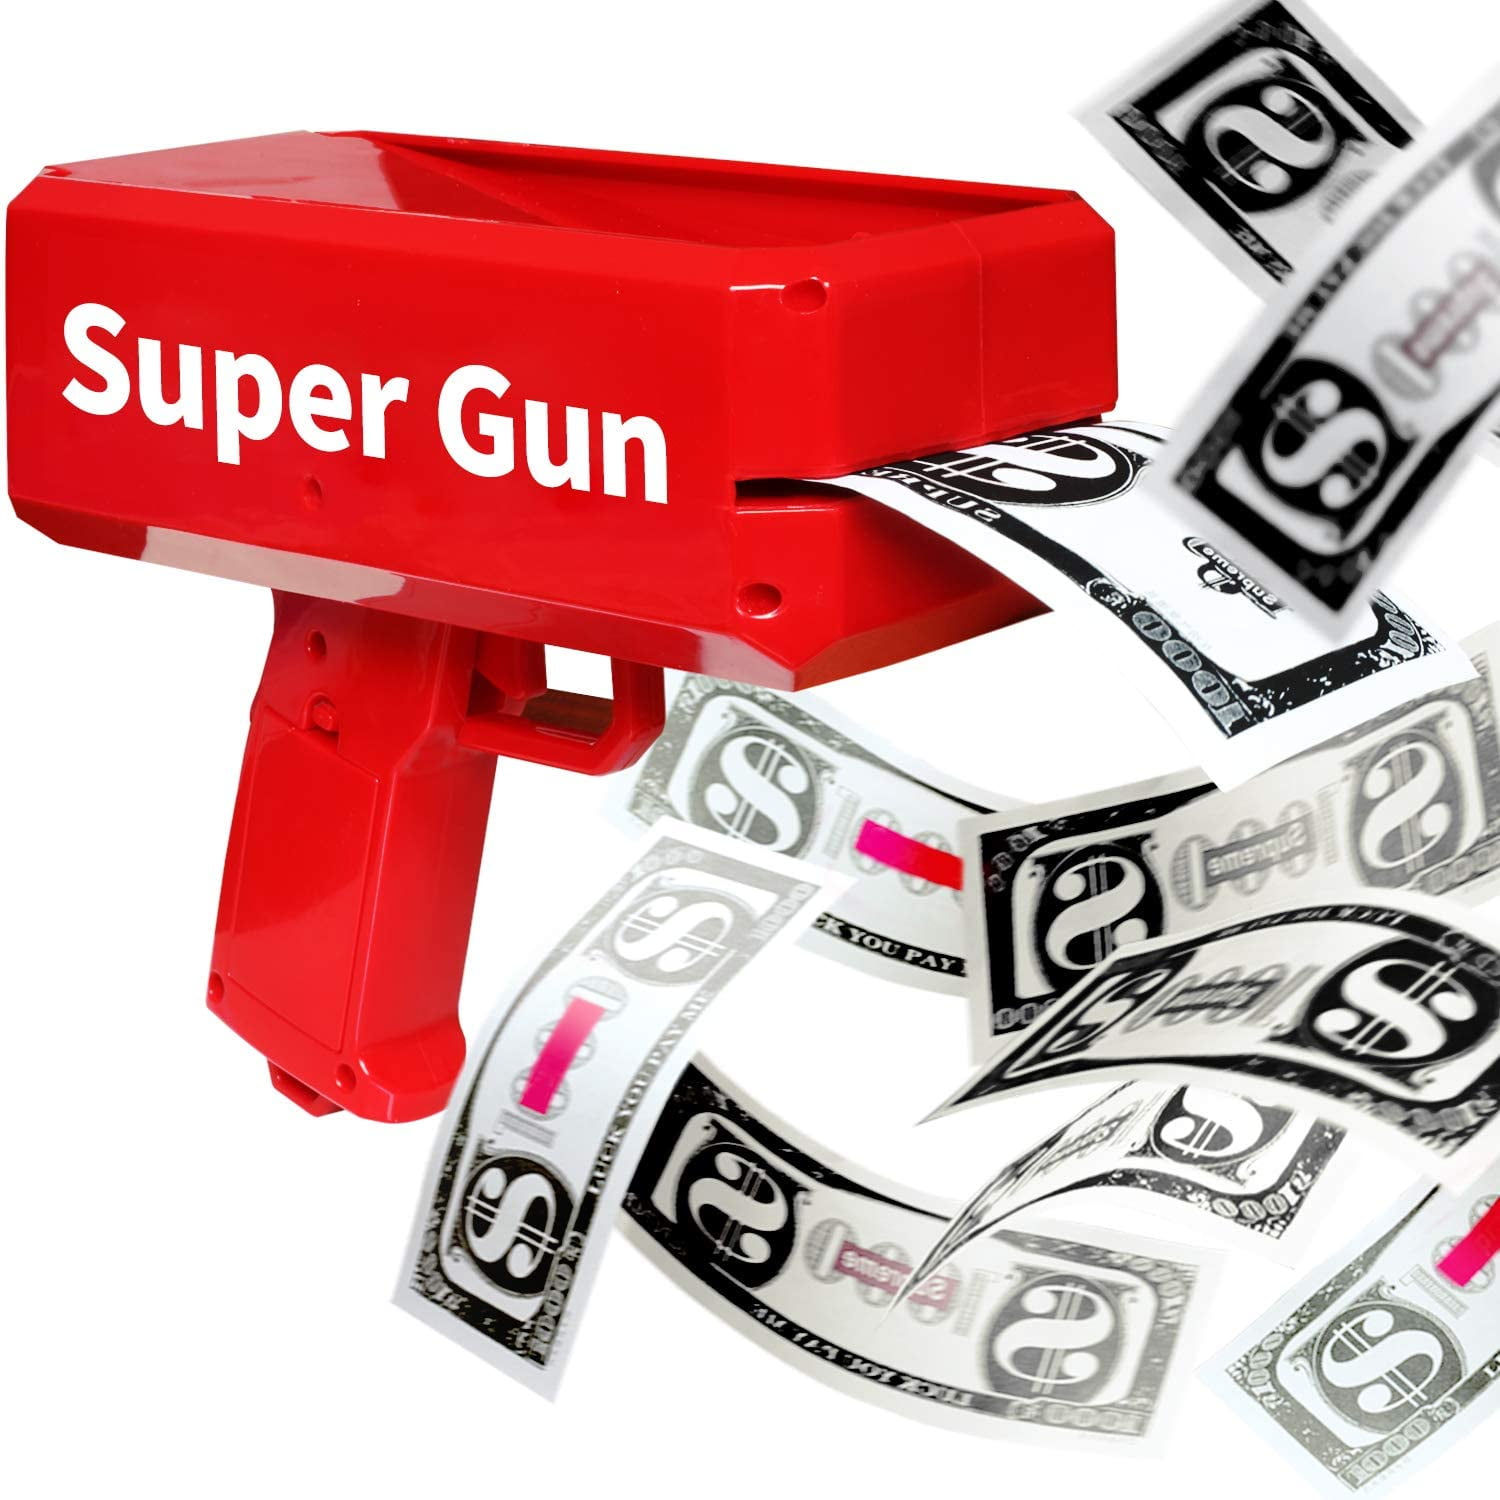 Supa Gun Make It Rain Money Gun Red Fashion Toy Party Box Gift 100PCS Cash NEW 